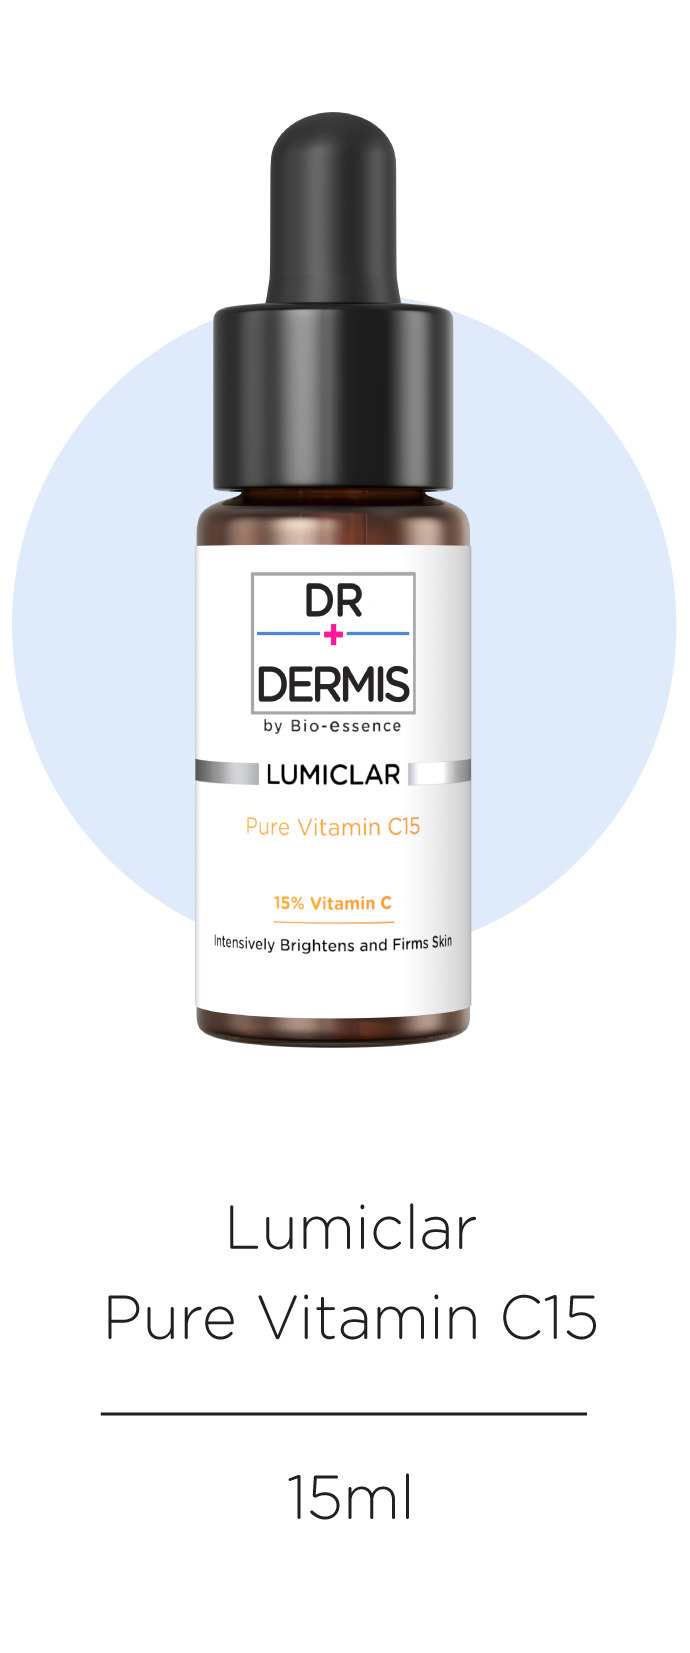 Lumiclar Pure Vitamin C15